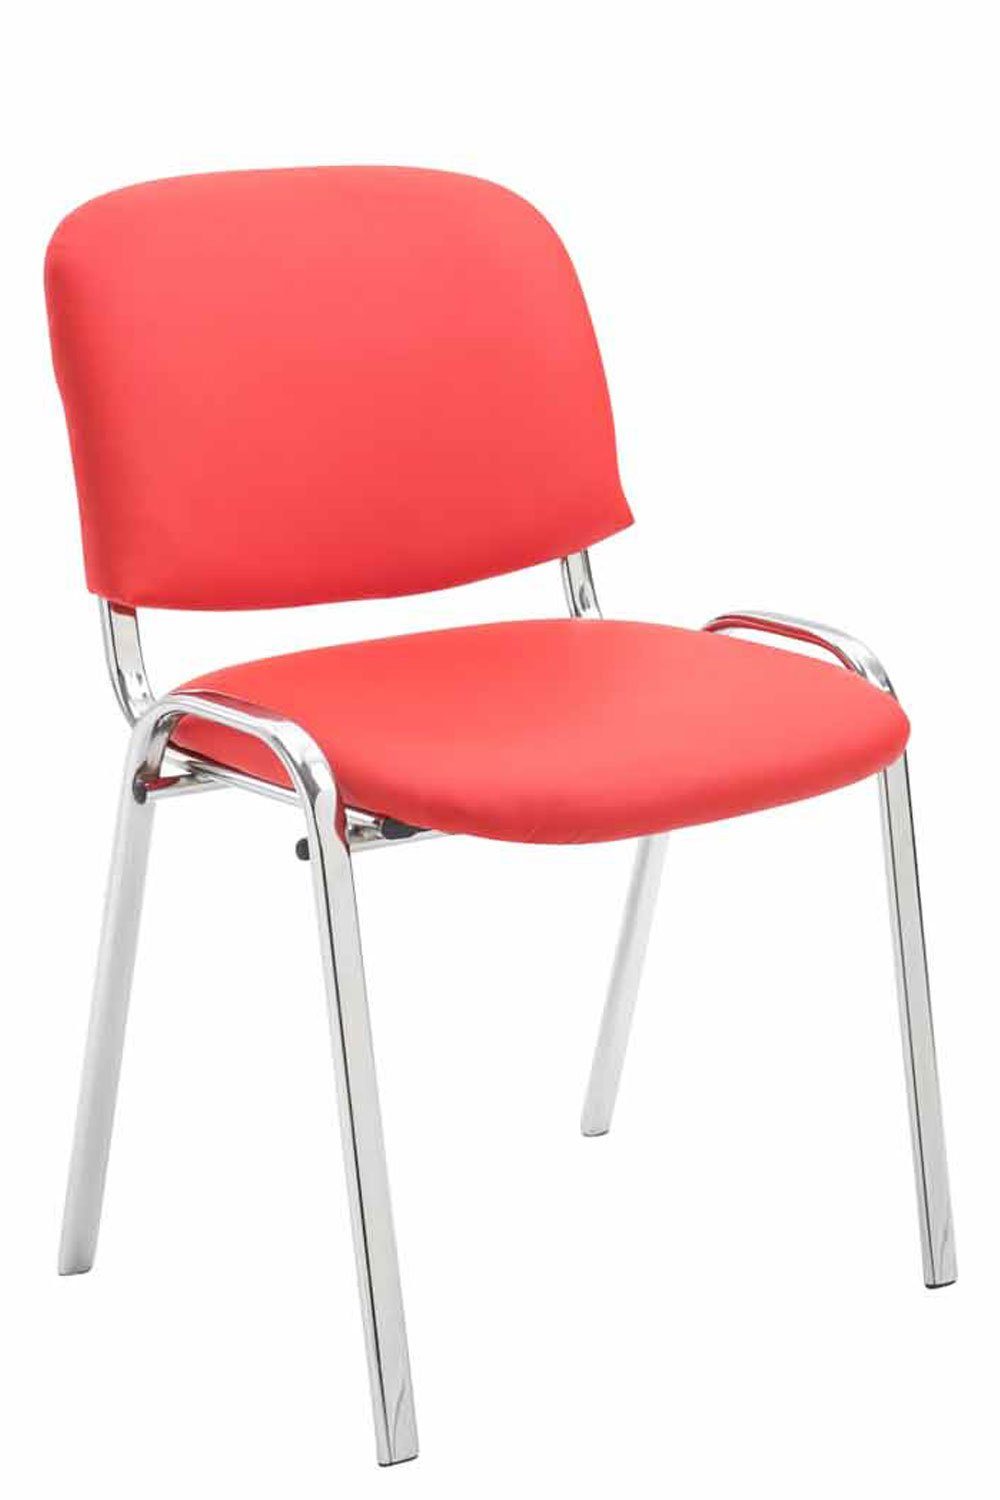 TPFLiving Besucherstuhl Keen mit hochwertiger Polsterung - Konferenzstuhl (Besprechungsstuhl - Warteraumstuhl - Messestuhl), Gestell: Metall chrom - Sitzfläche: Kunstleder rot | Besucherstühle